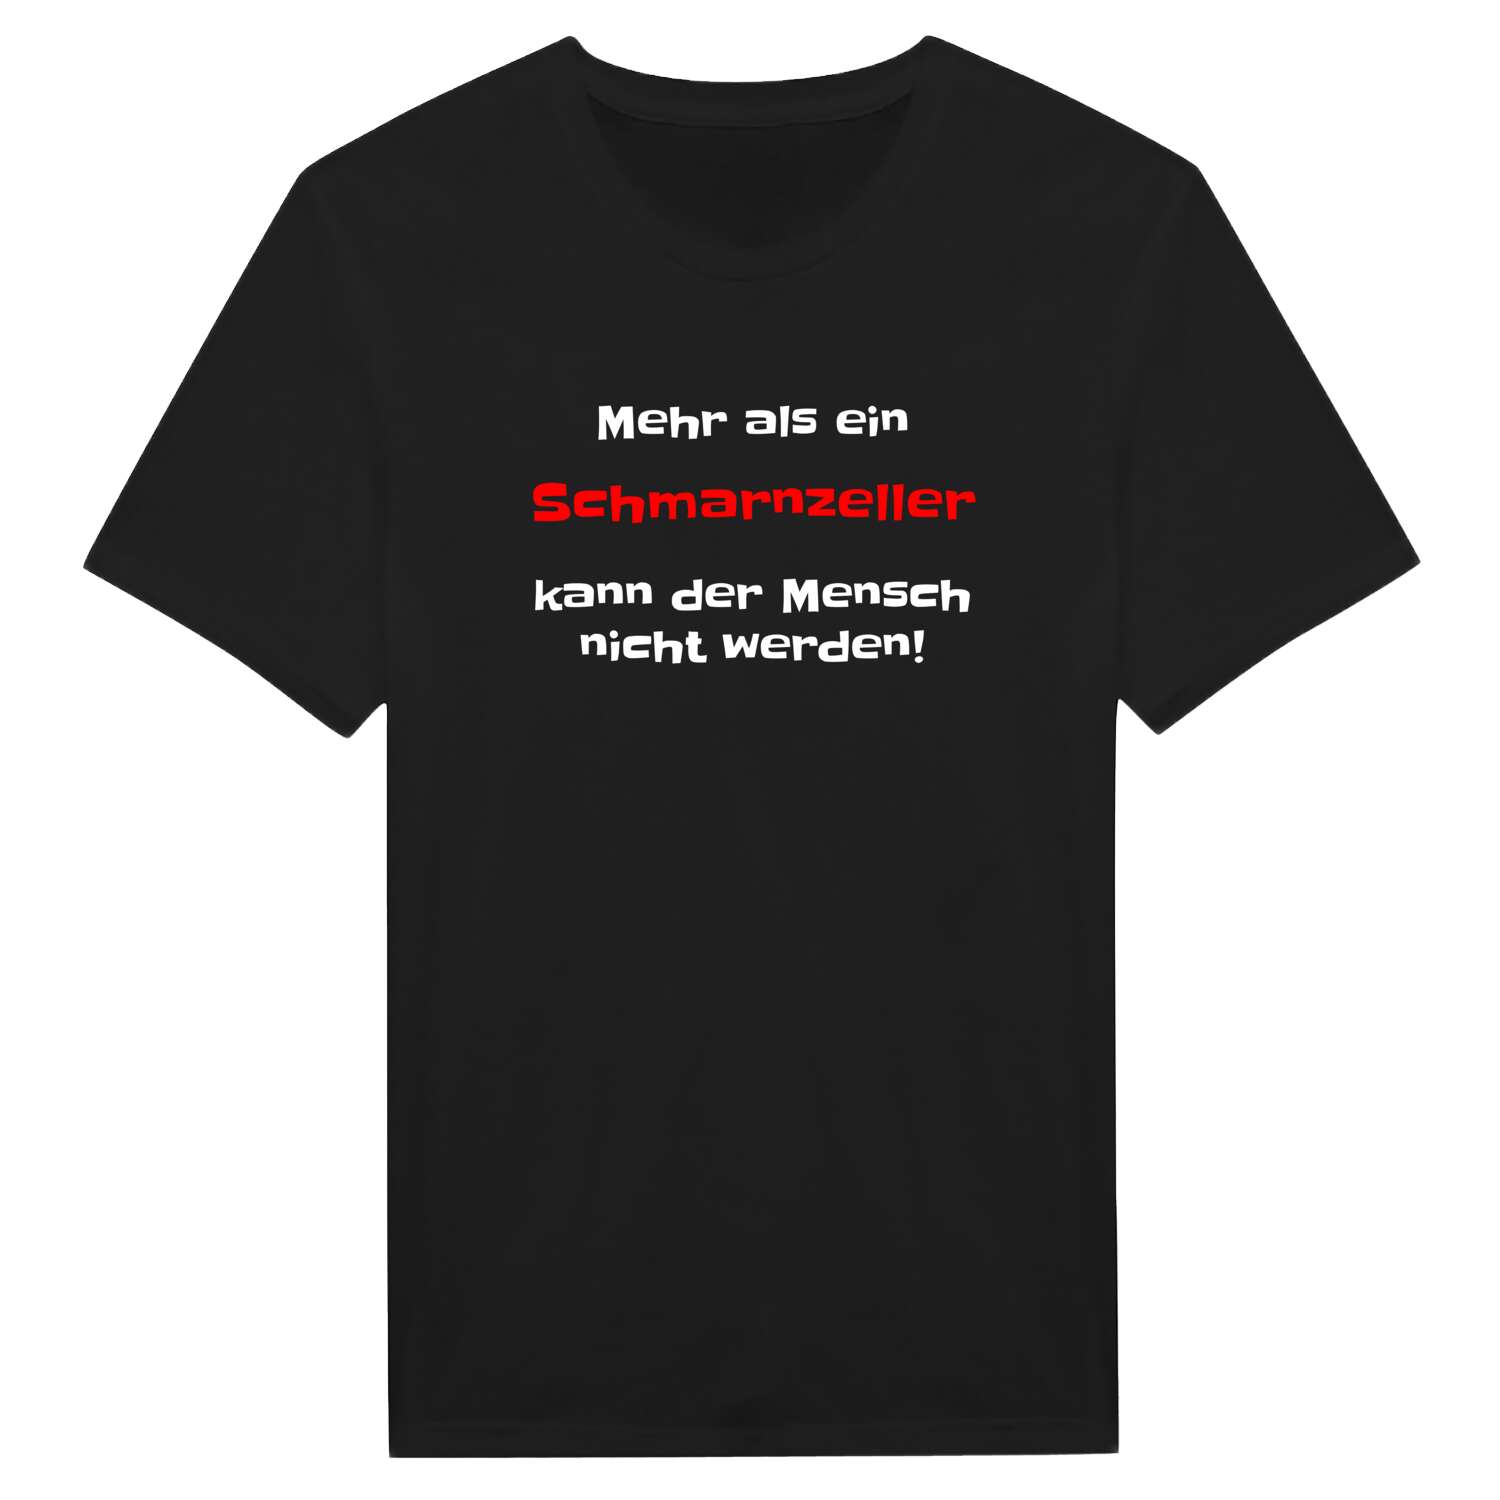 Schmarnzell T-Shirt »Mehr als ein«